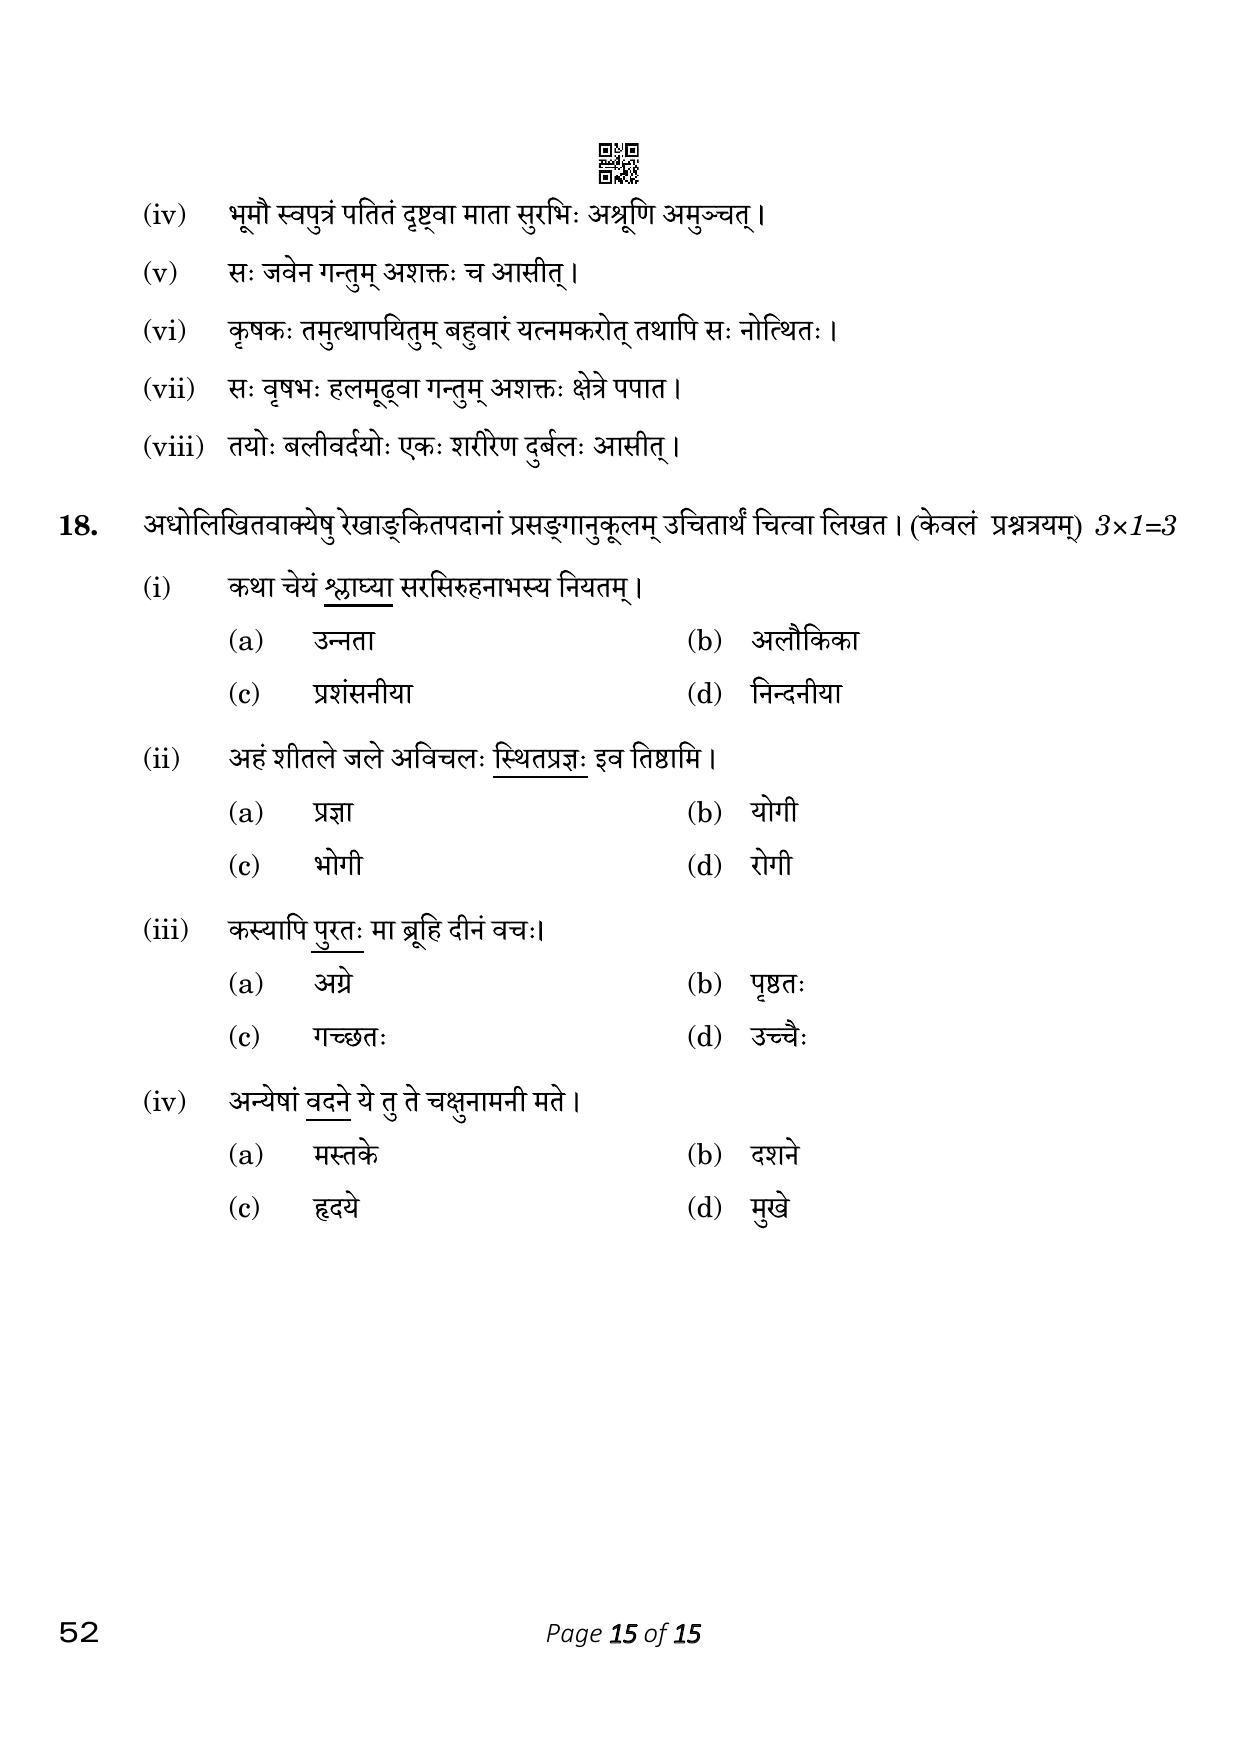 CBSE Class 10 Sanskrit (Compartment) 2023 Question Paper - Page 15